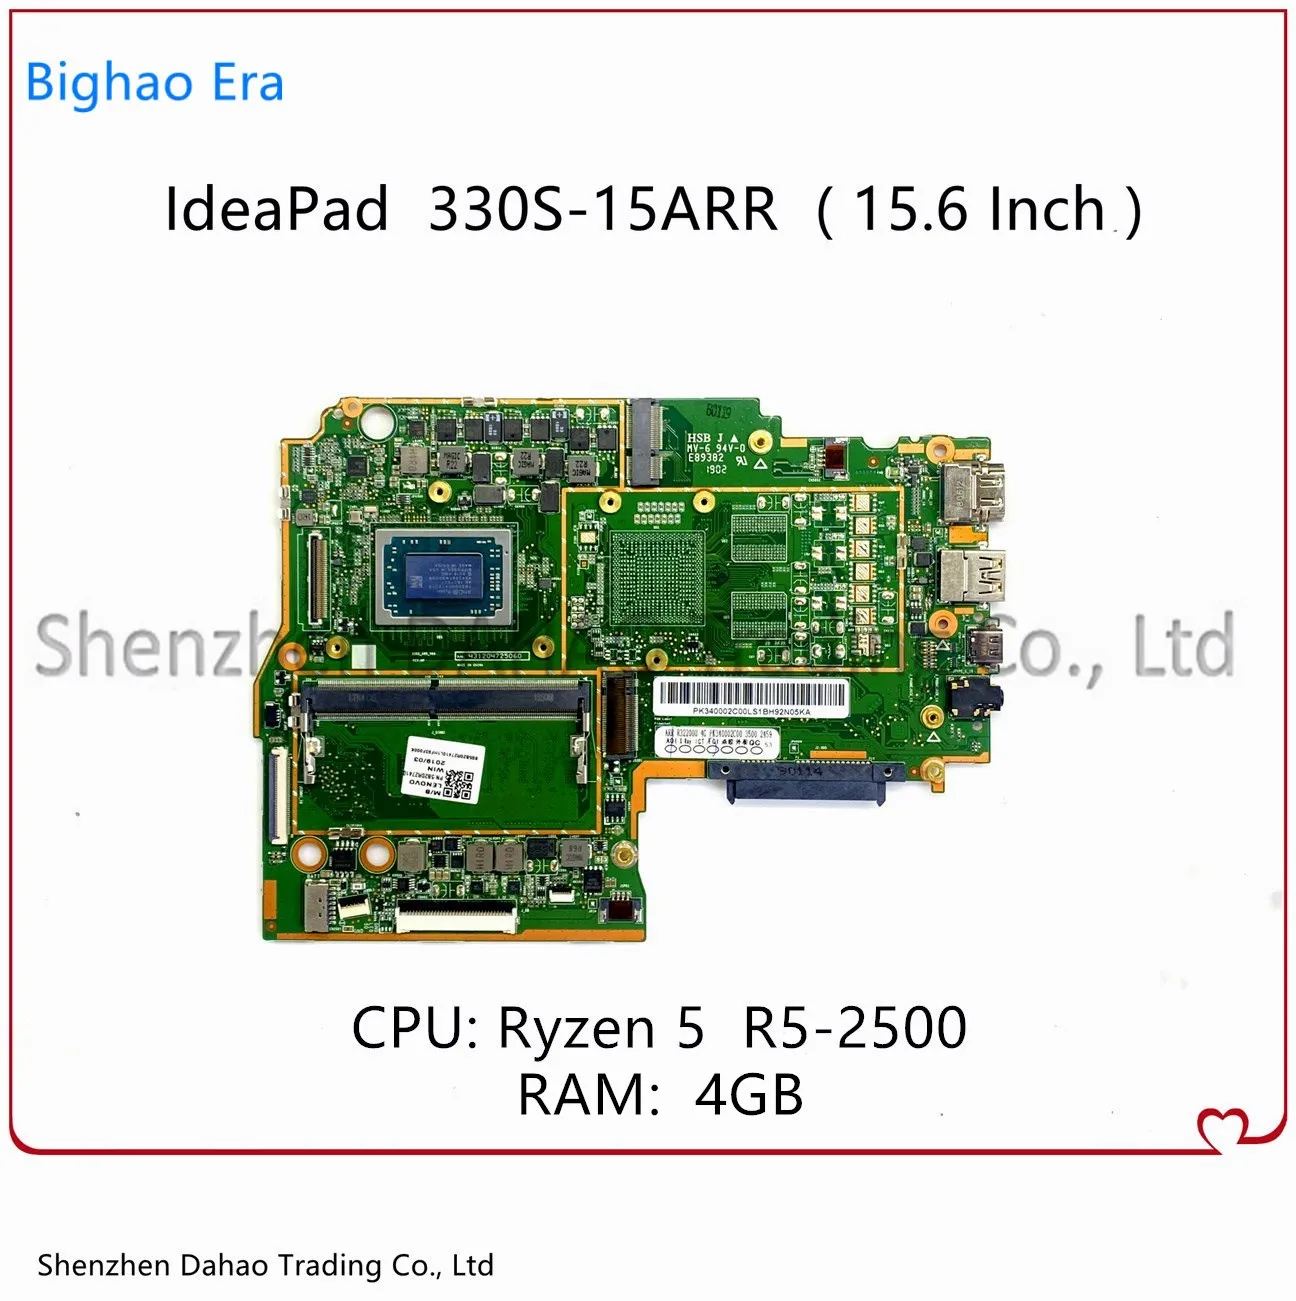 

Материнская плата FRU 5B20R27416 для ноутбука Lenovo Ideapad 330S-15ARR 330-15ARR с процессором Ryzen 5 R5-2500 CPU 4GB-RAM DDR4, полностью протестирована